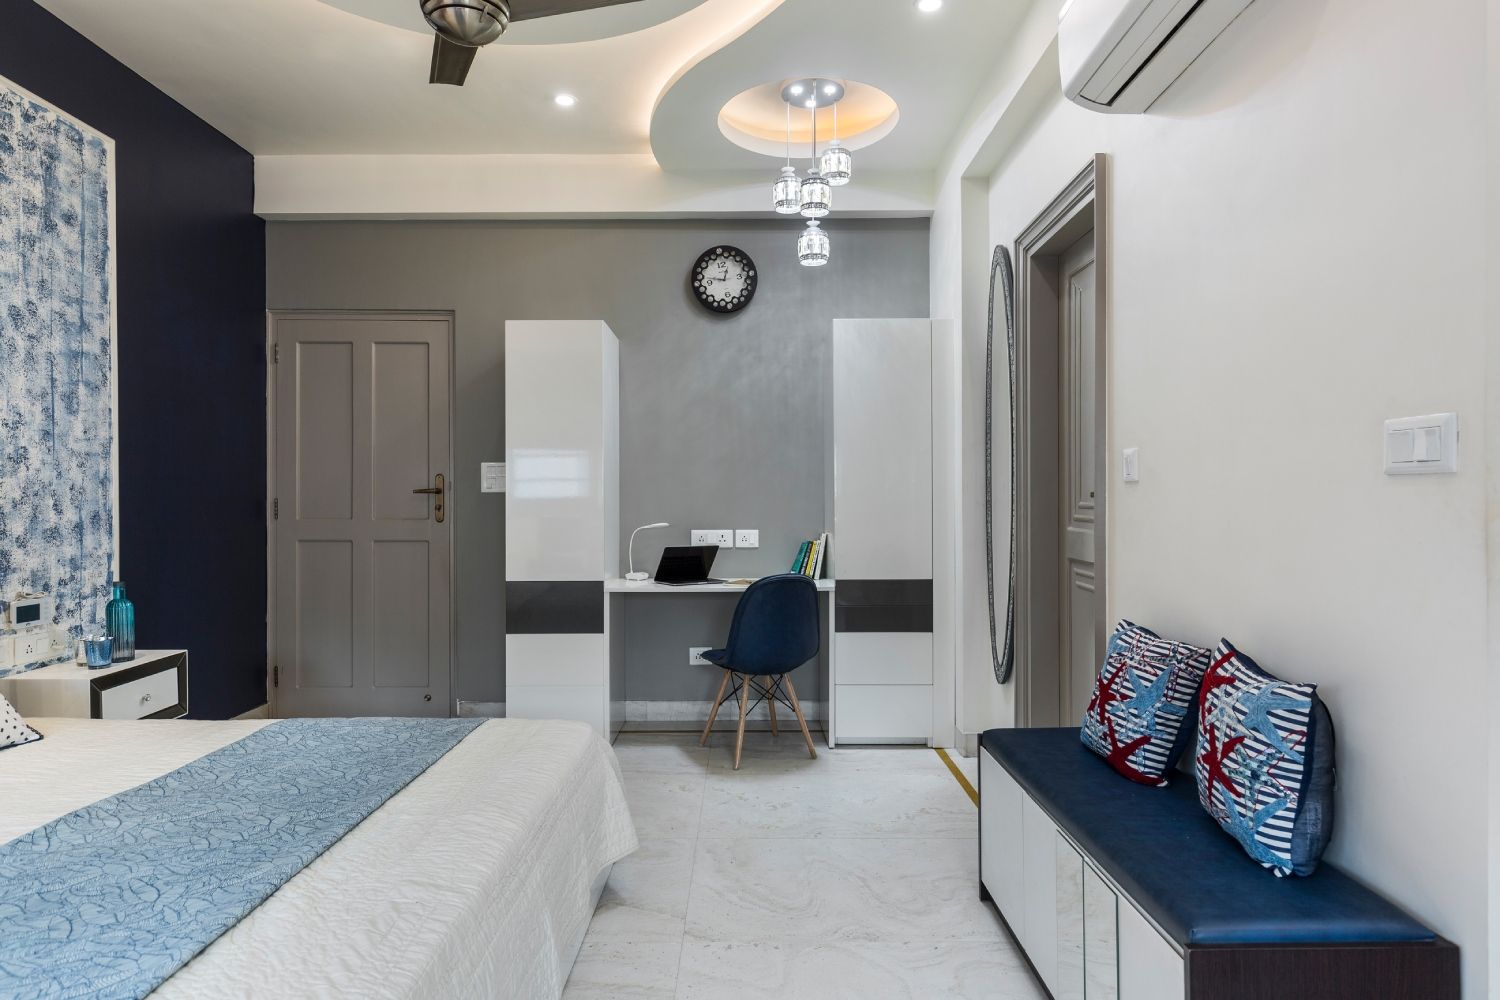 Modern Multilayered Bedroom False Ceiling Design With A Chandelier